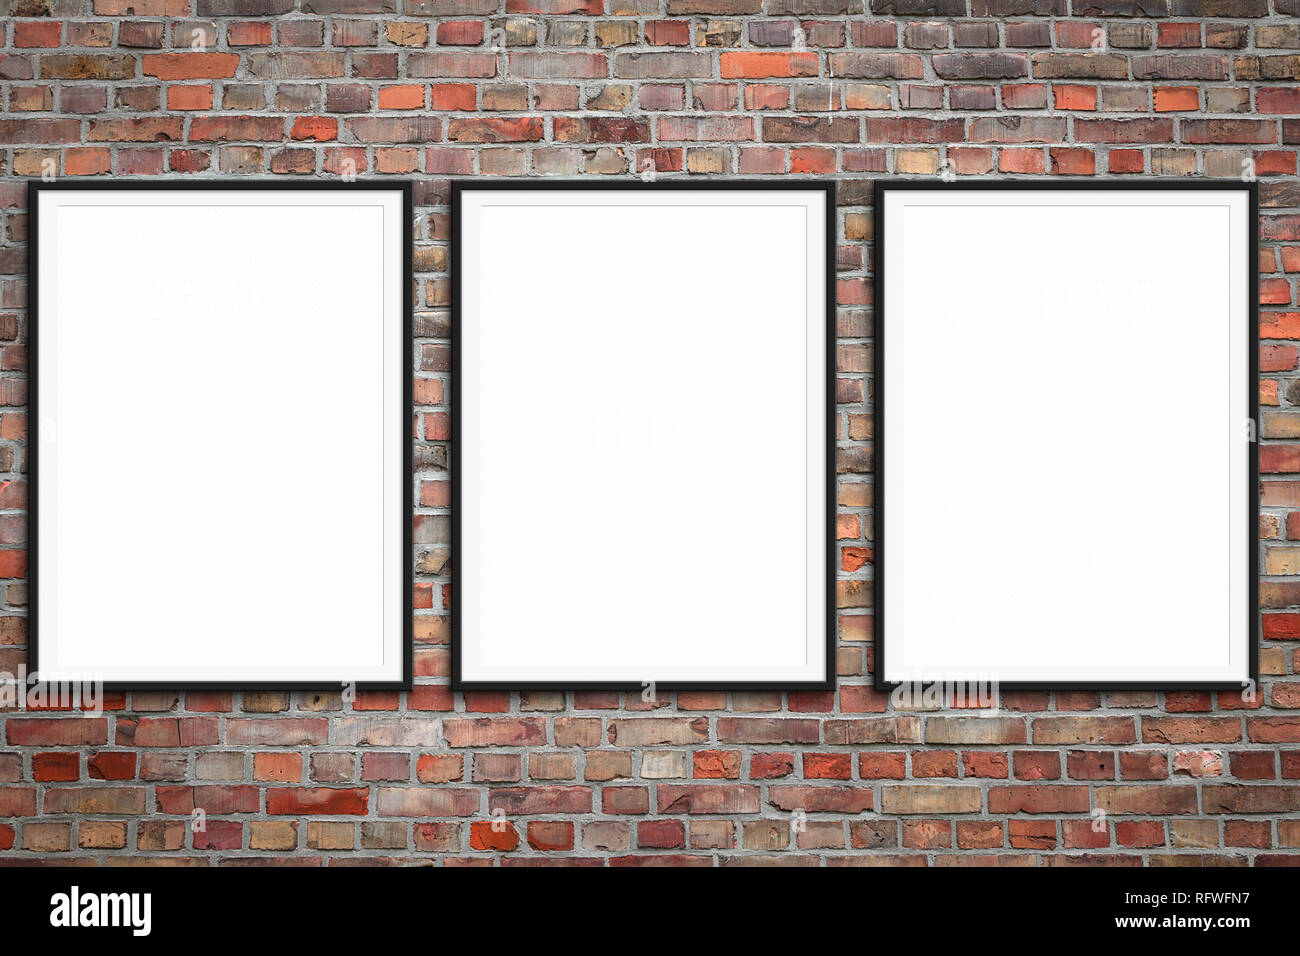 Vuoto tre cornici su un muro di mattoni - poster incorniciato mock-up con muro di pietra sullo sfondo Foto Stock